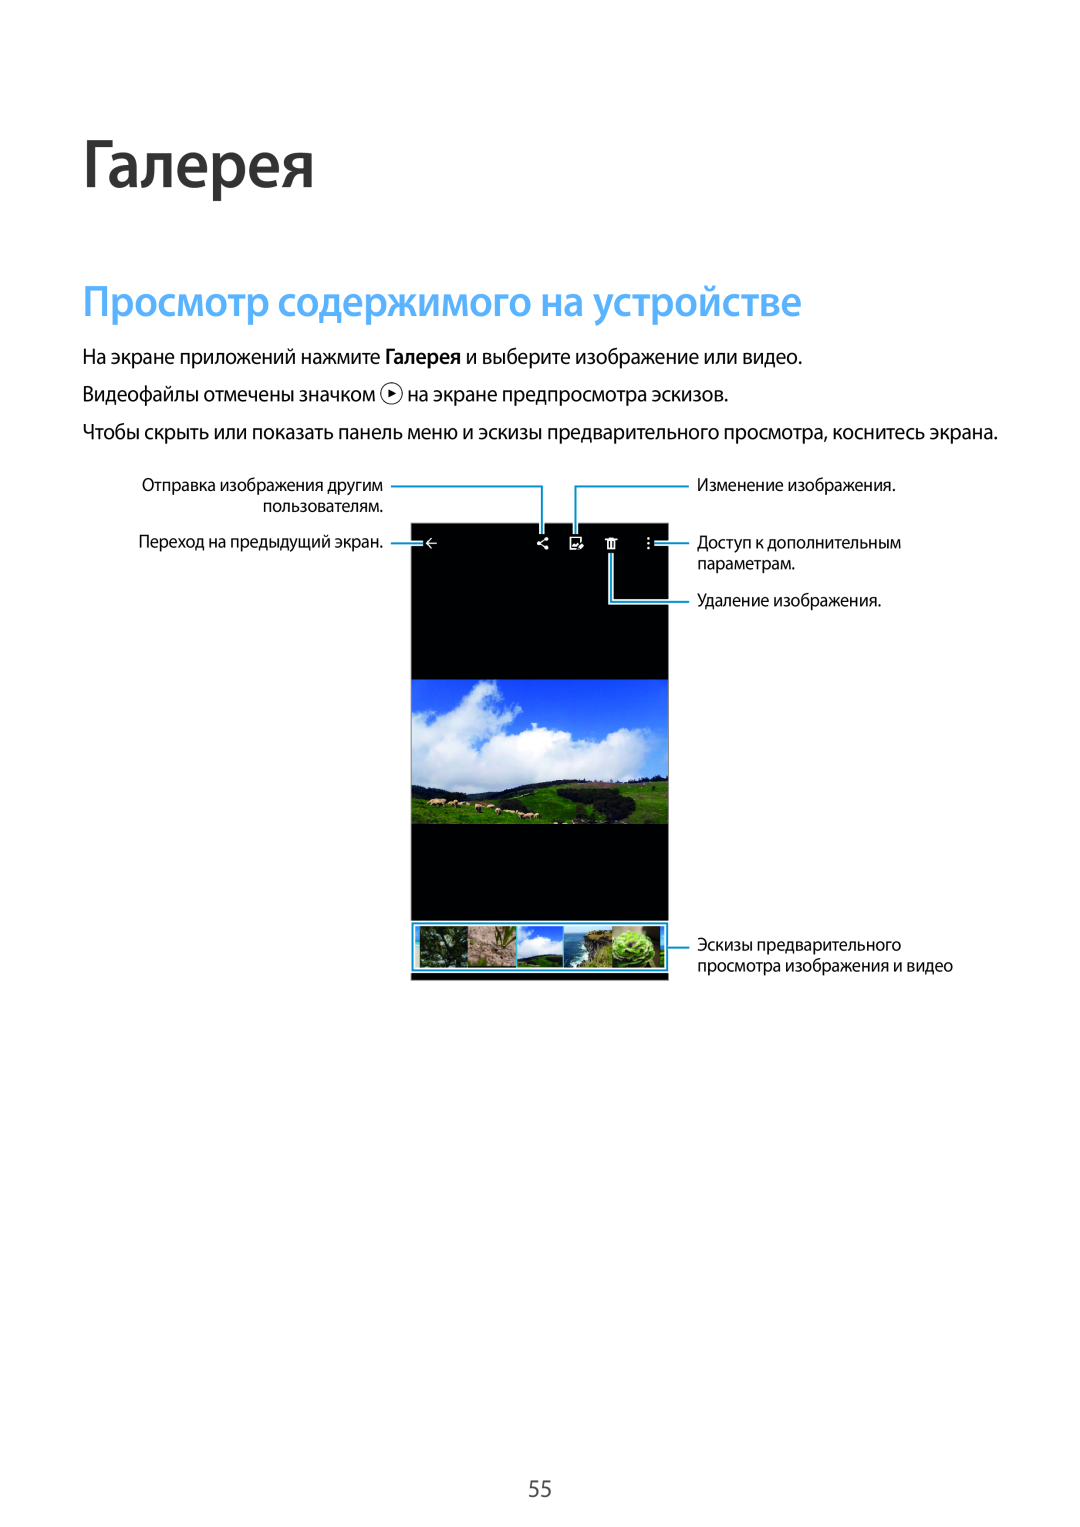 Samsung SM-G531FZAASEB Галерея, Просмотр содержимого на устройстве, Переход на предыдущий экран, Изменение изображения 